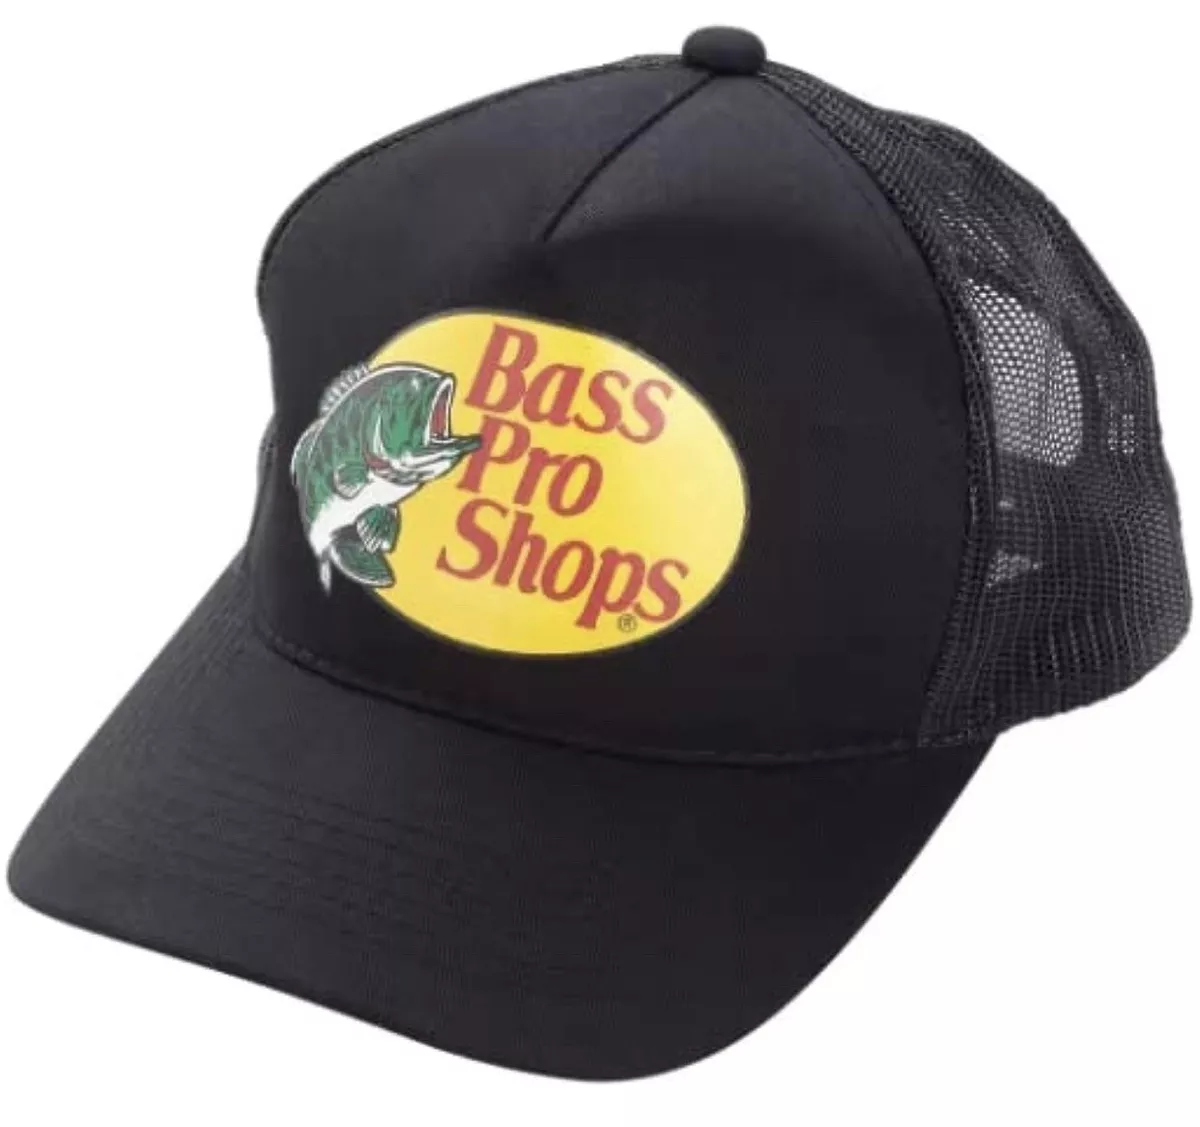 Bass Pro Shops Outdoor Fishing Trucker Hat Mesh Cap Adjustable